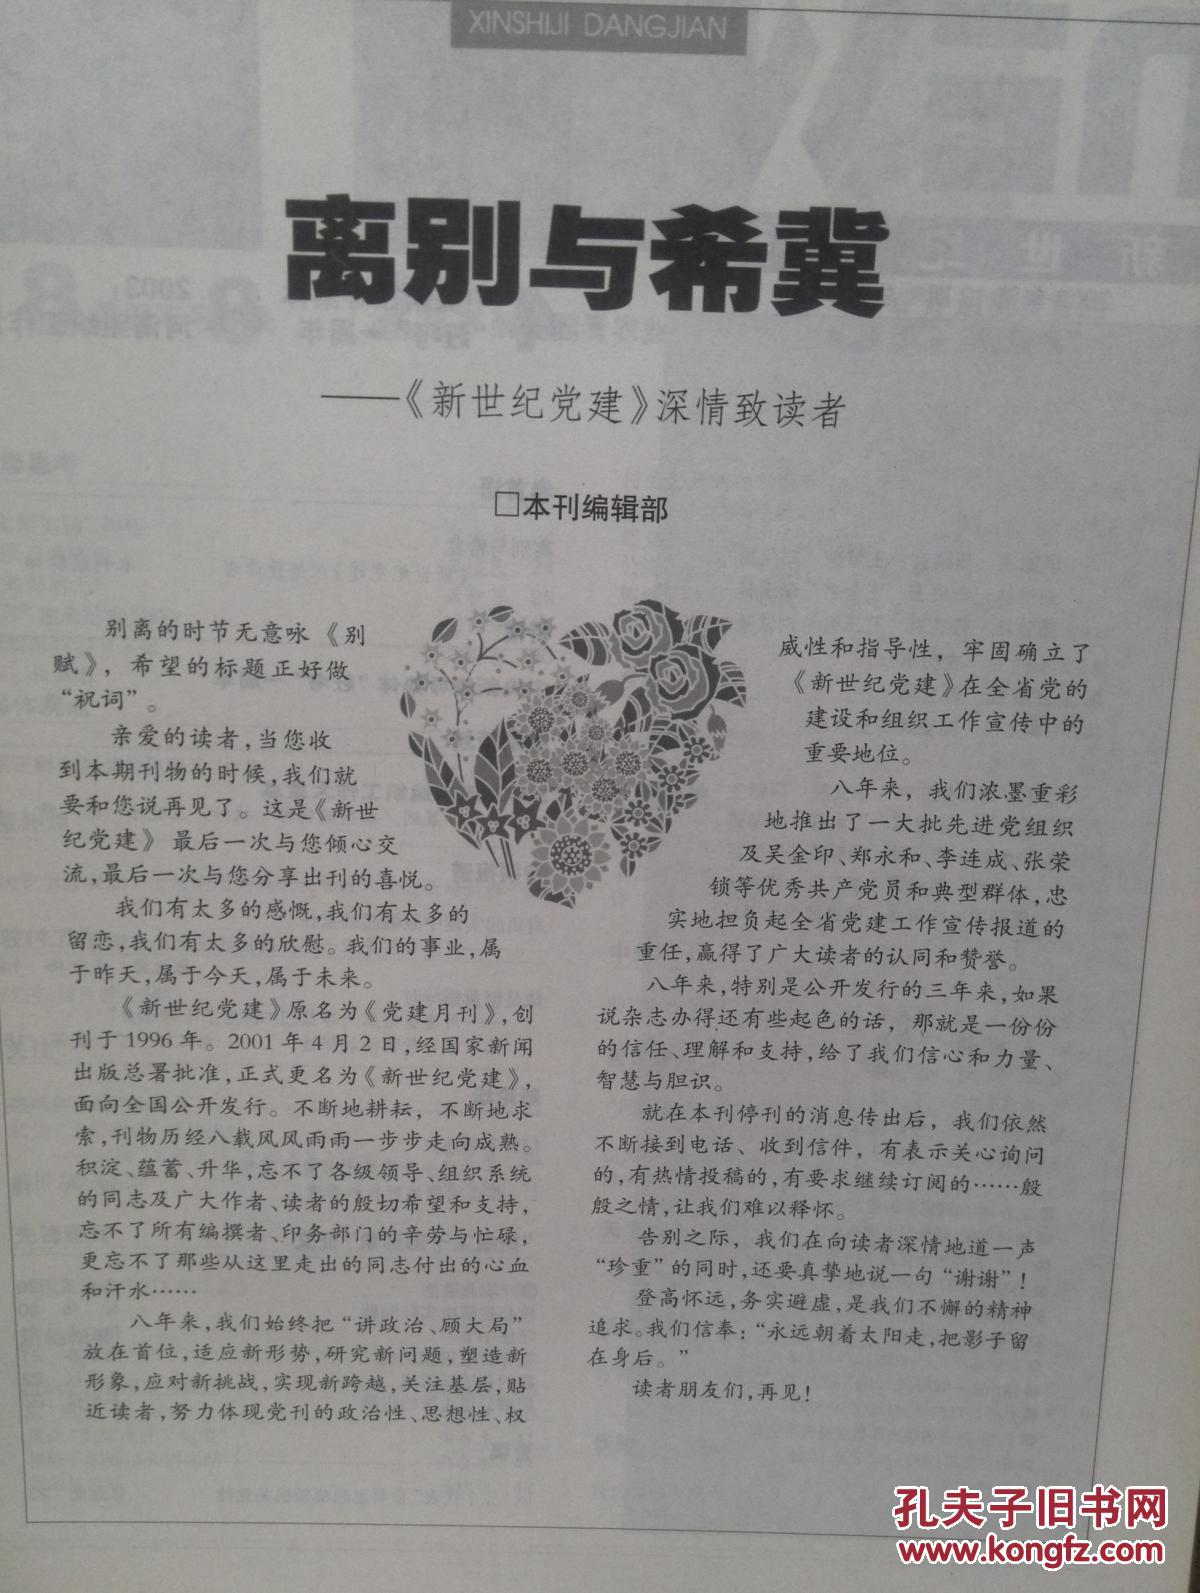 【图】新世纪党建终刊号2003年有终刊词,中州